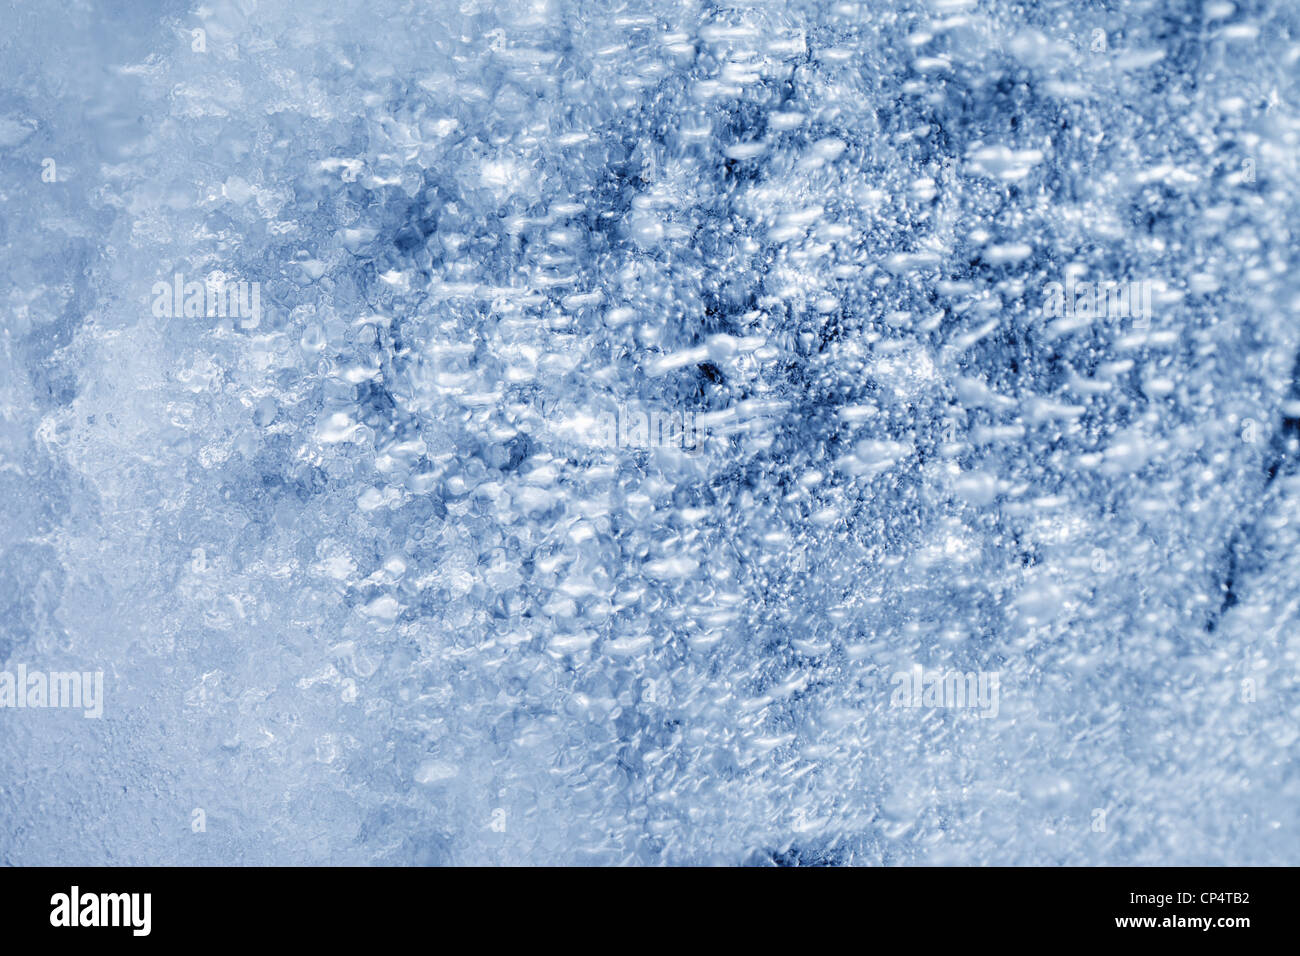 Hintergrund Bildtextur des Eises in Nahaufnahme. Stockfoto